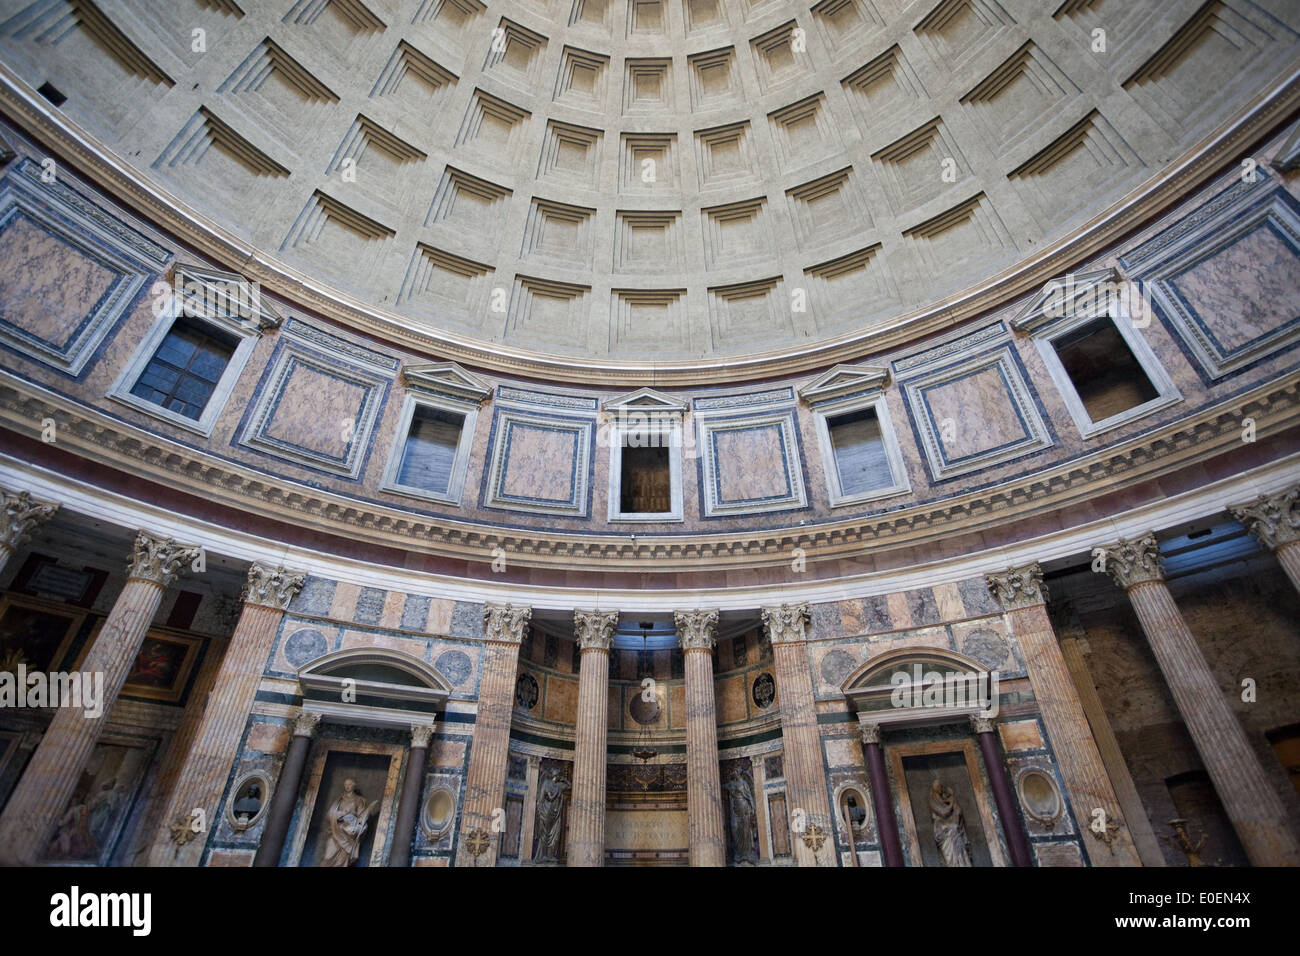 Innenansicht Pantheon, Rom, Italien - Pantheon, Rome, Italy Stock Photo